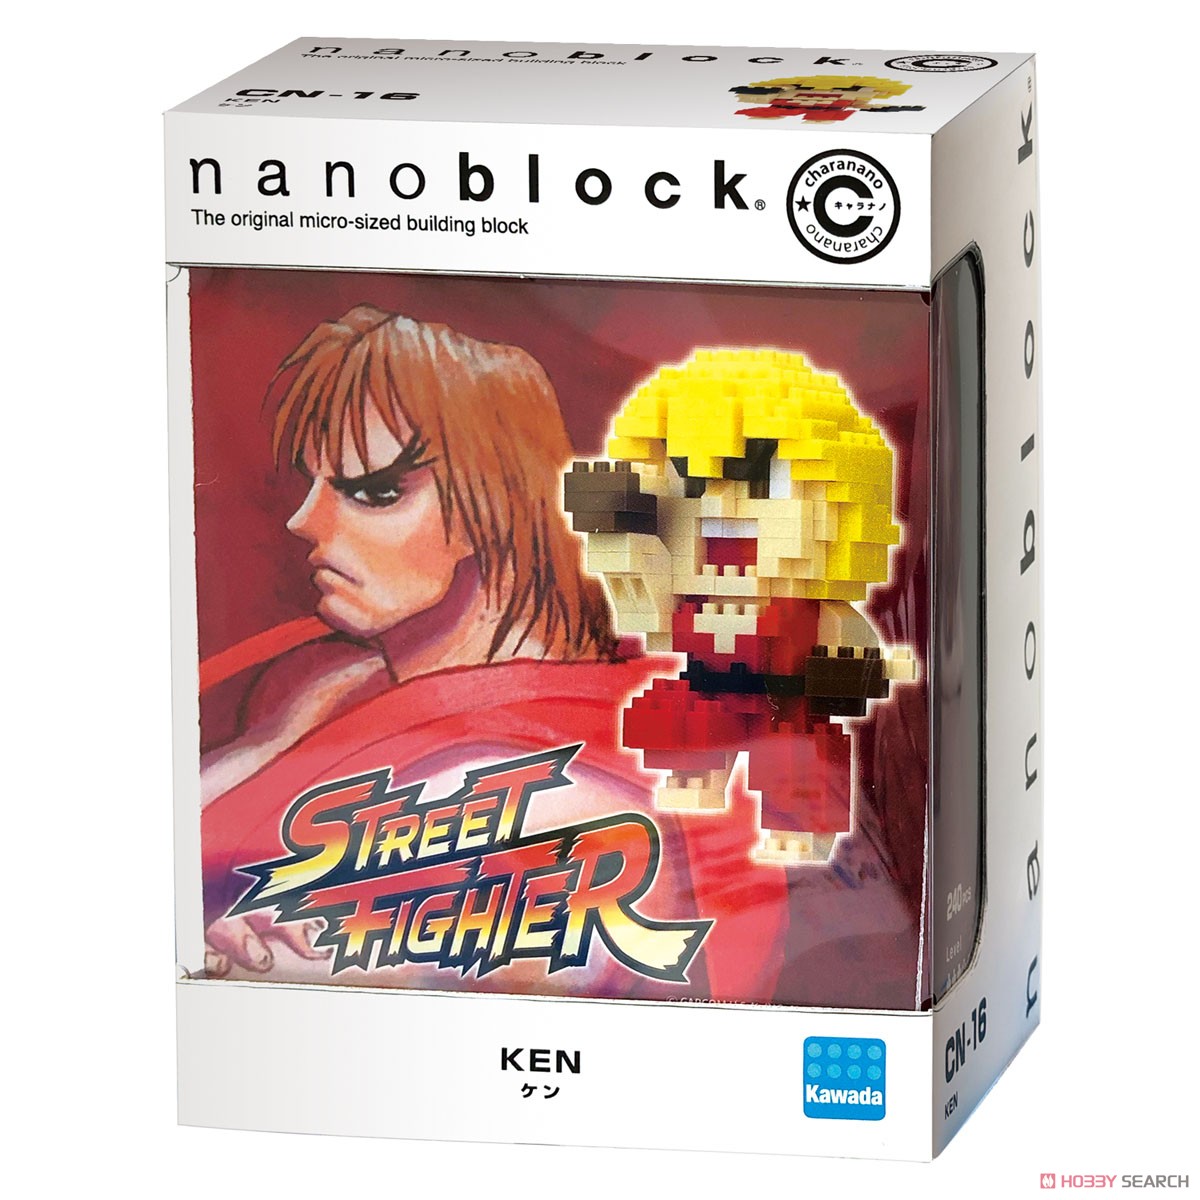 nanoblock キャラナノ ケン (ブロック) パッケージ1